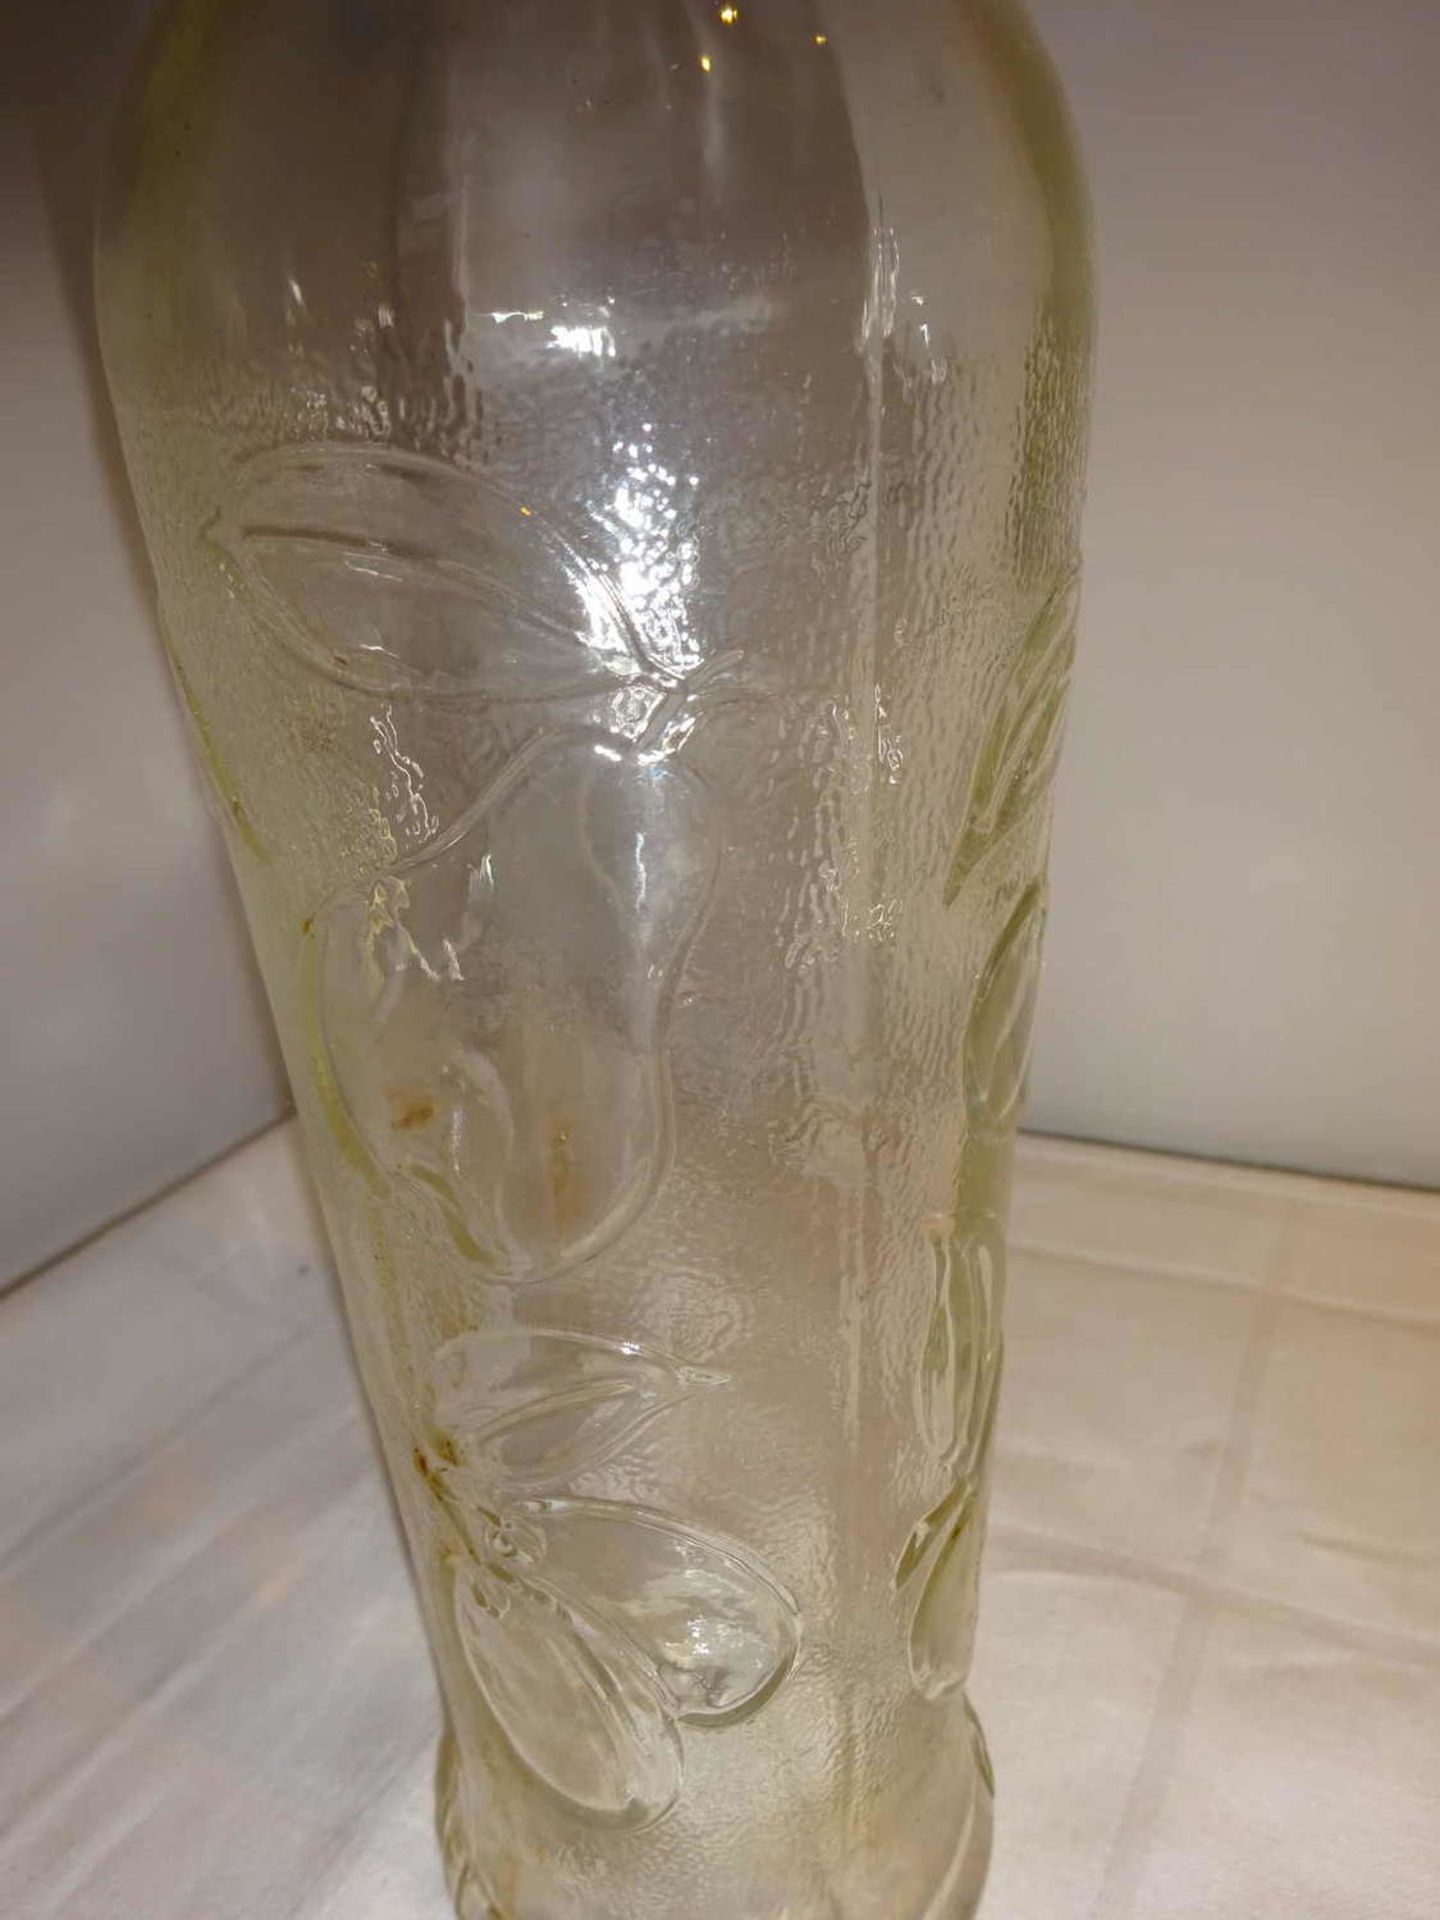 Vintage Glas-Saftflasche GERRIX, Höhe ca. 26 cm, guter Zustand.Vintage glass juice bottle GERRIX, - Image 2 of 3